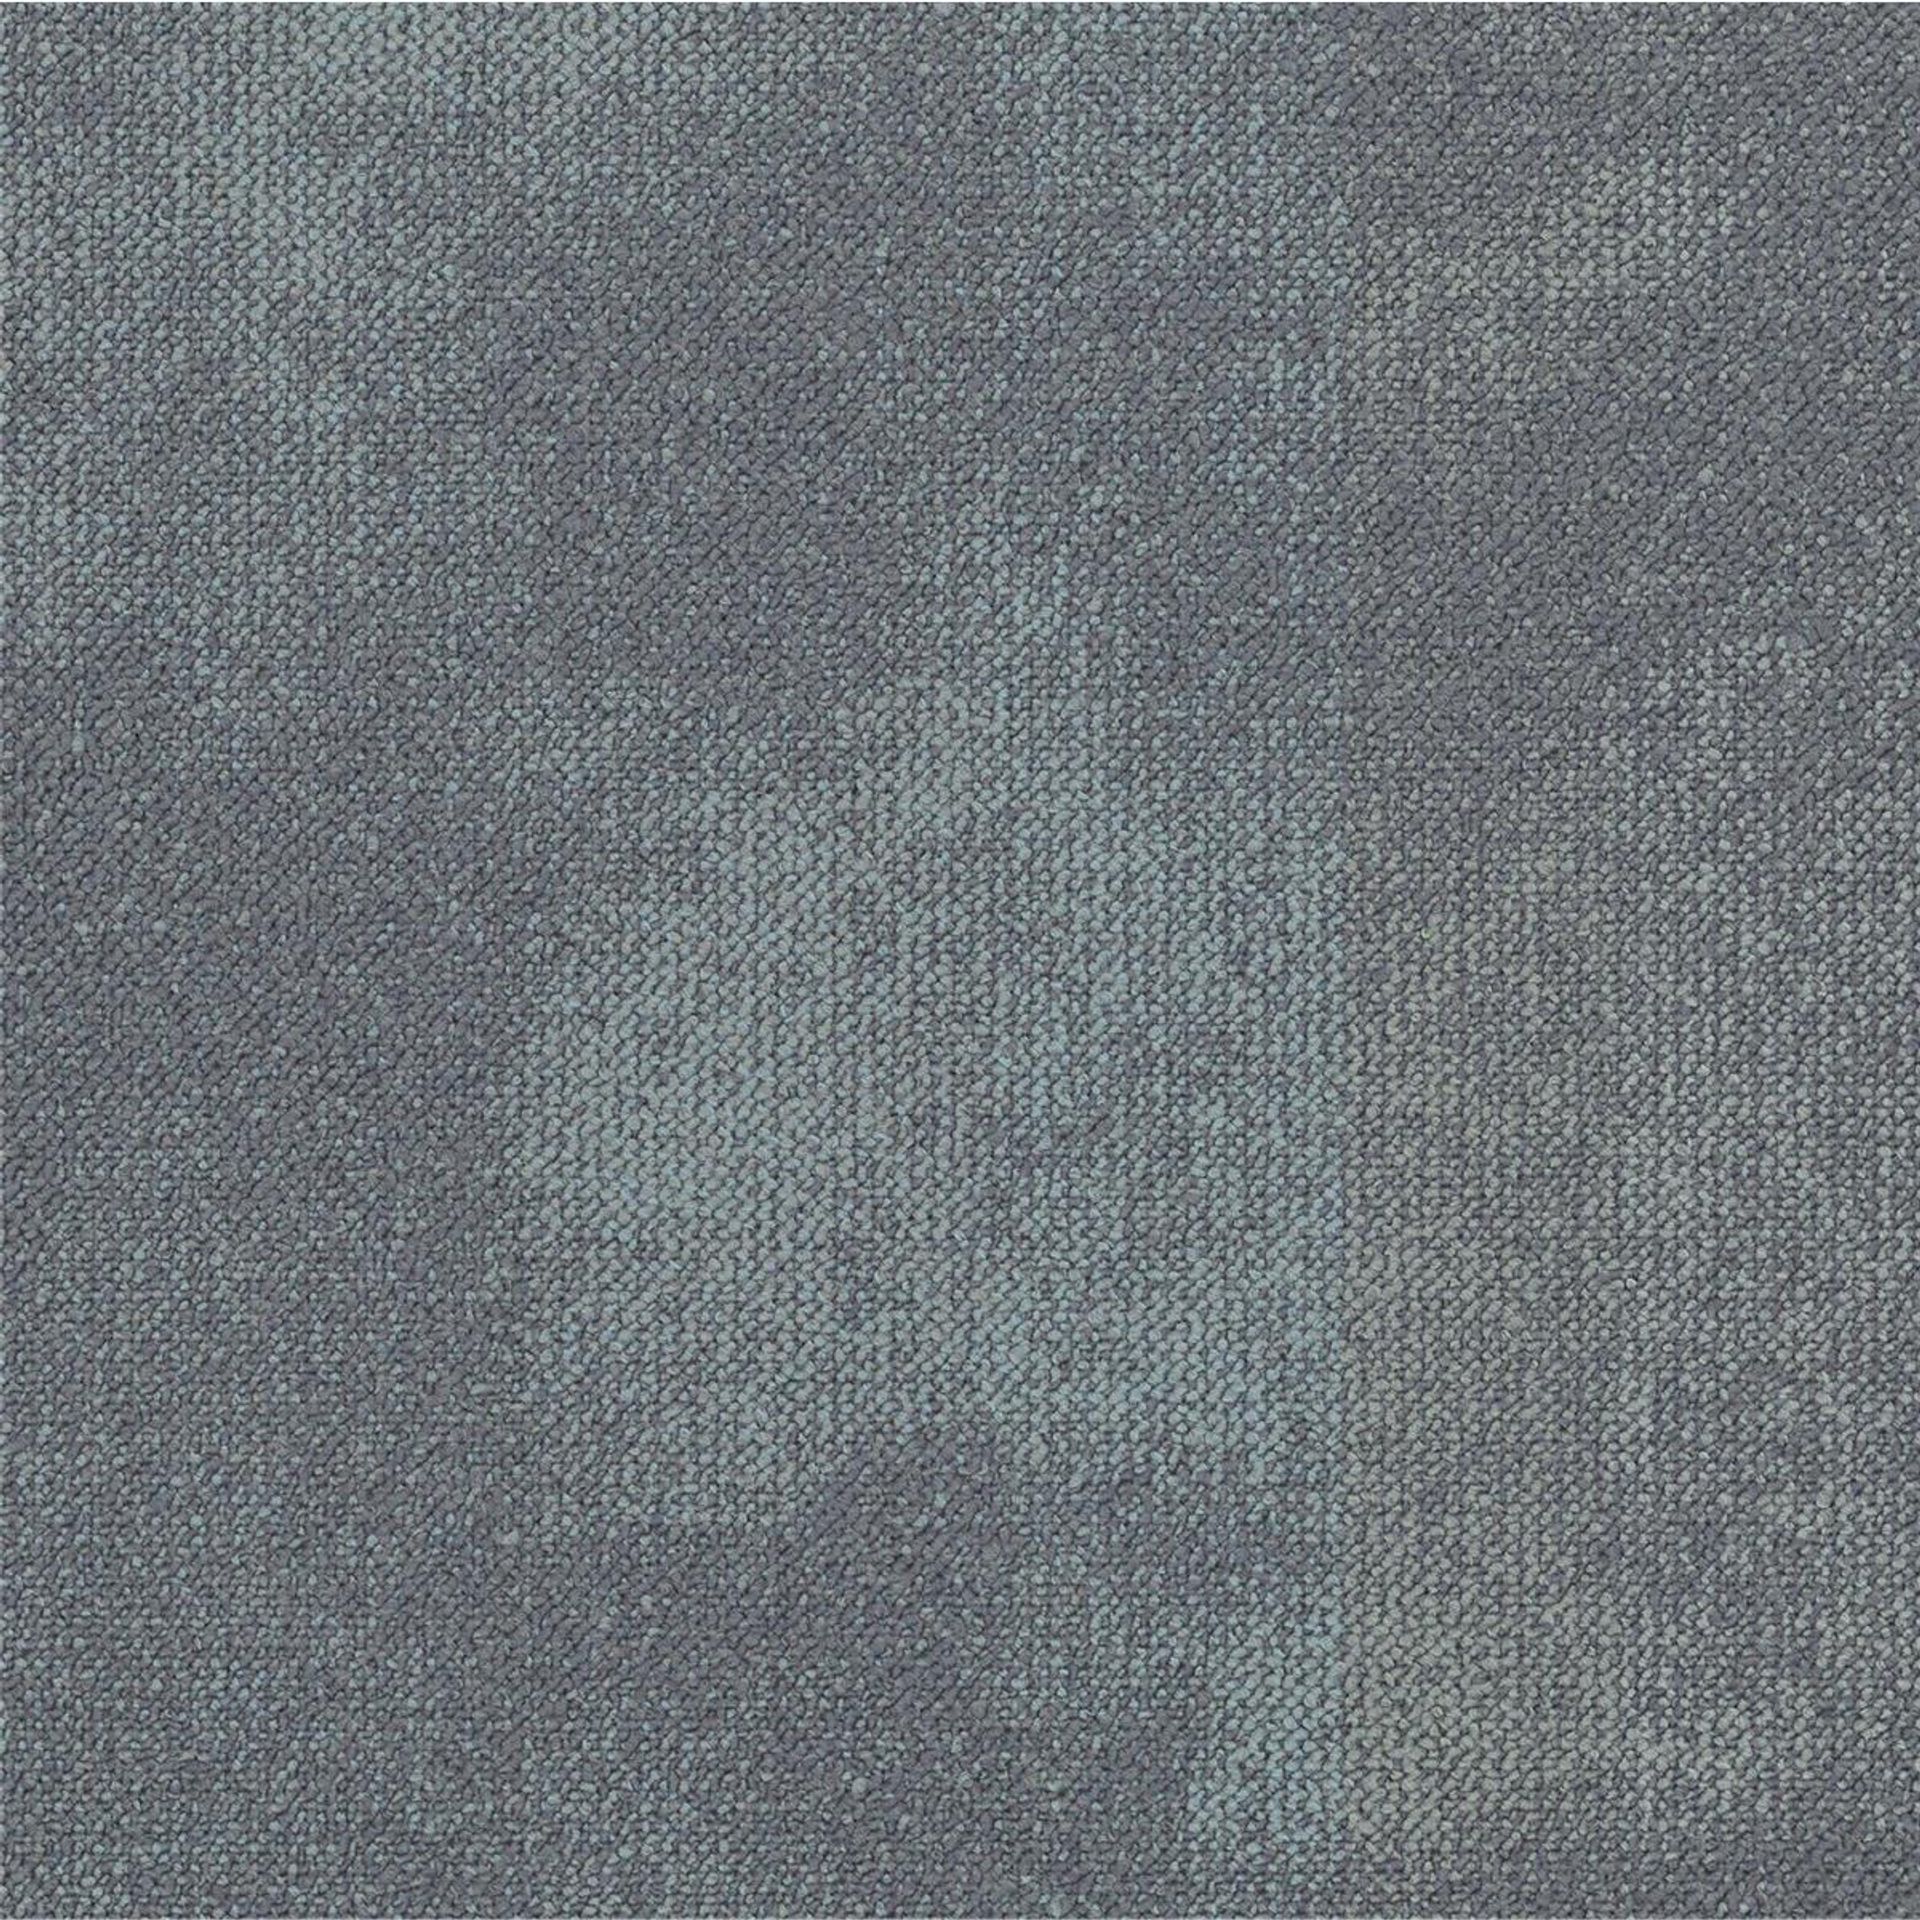 Teppichfliesen 50 x 50 cm Schlinge strukturiert Serene AB93 9035-V B8 Grau Organisch